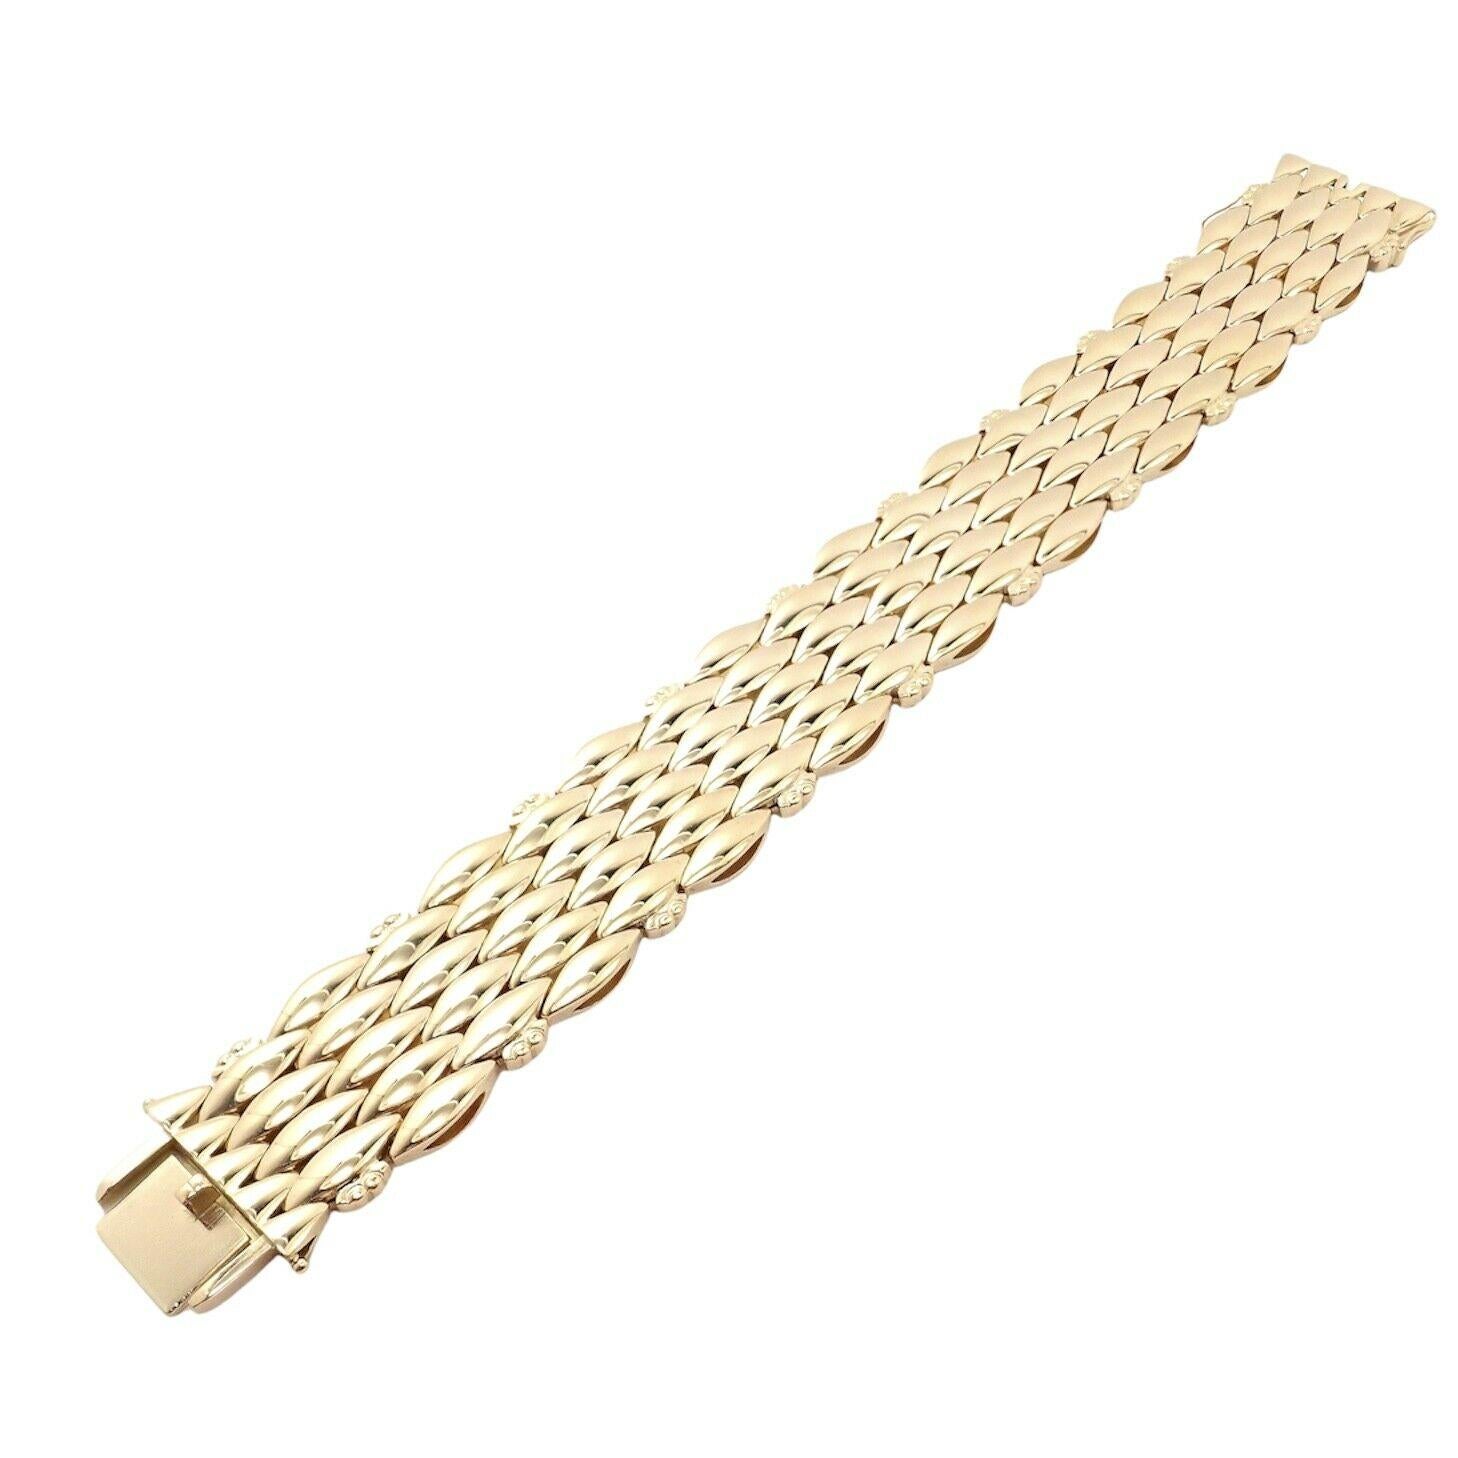 bracelet à maillons larges en or jaune 18k par Harald Nielsen pour Georg Jensen.
Détails :
Longueur : Longueur totale : 7.9